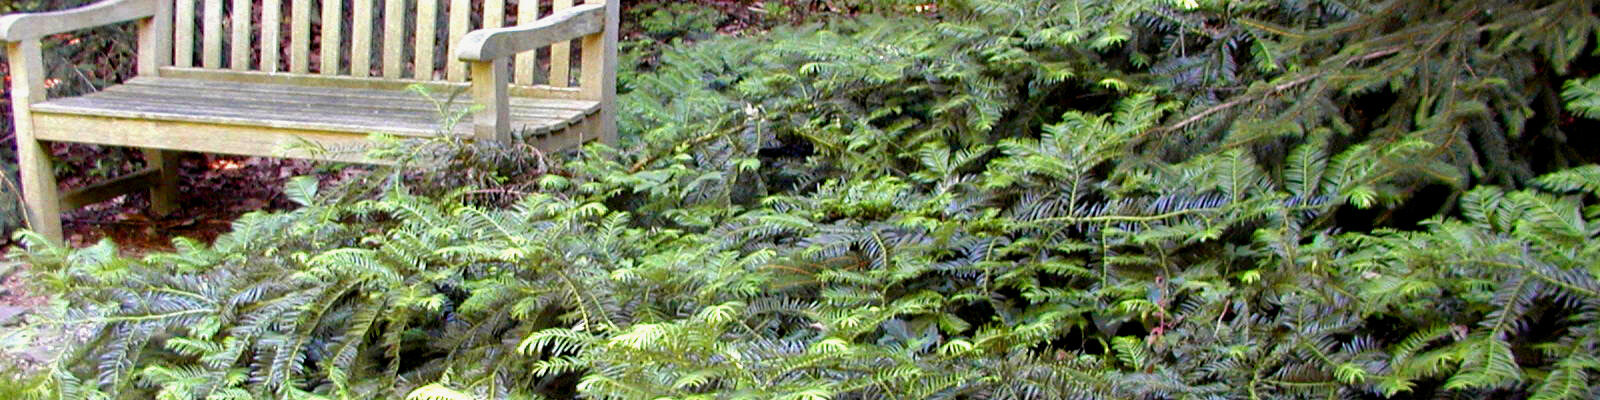 CEPHALOTAXUS harringtonia 'Prostrata' - Prostrate Plum Yew